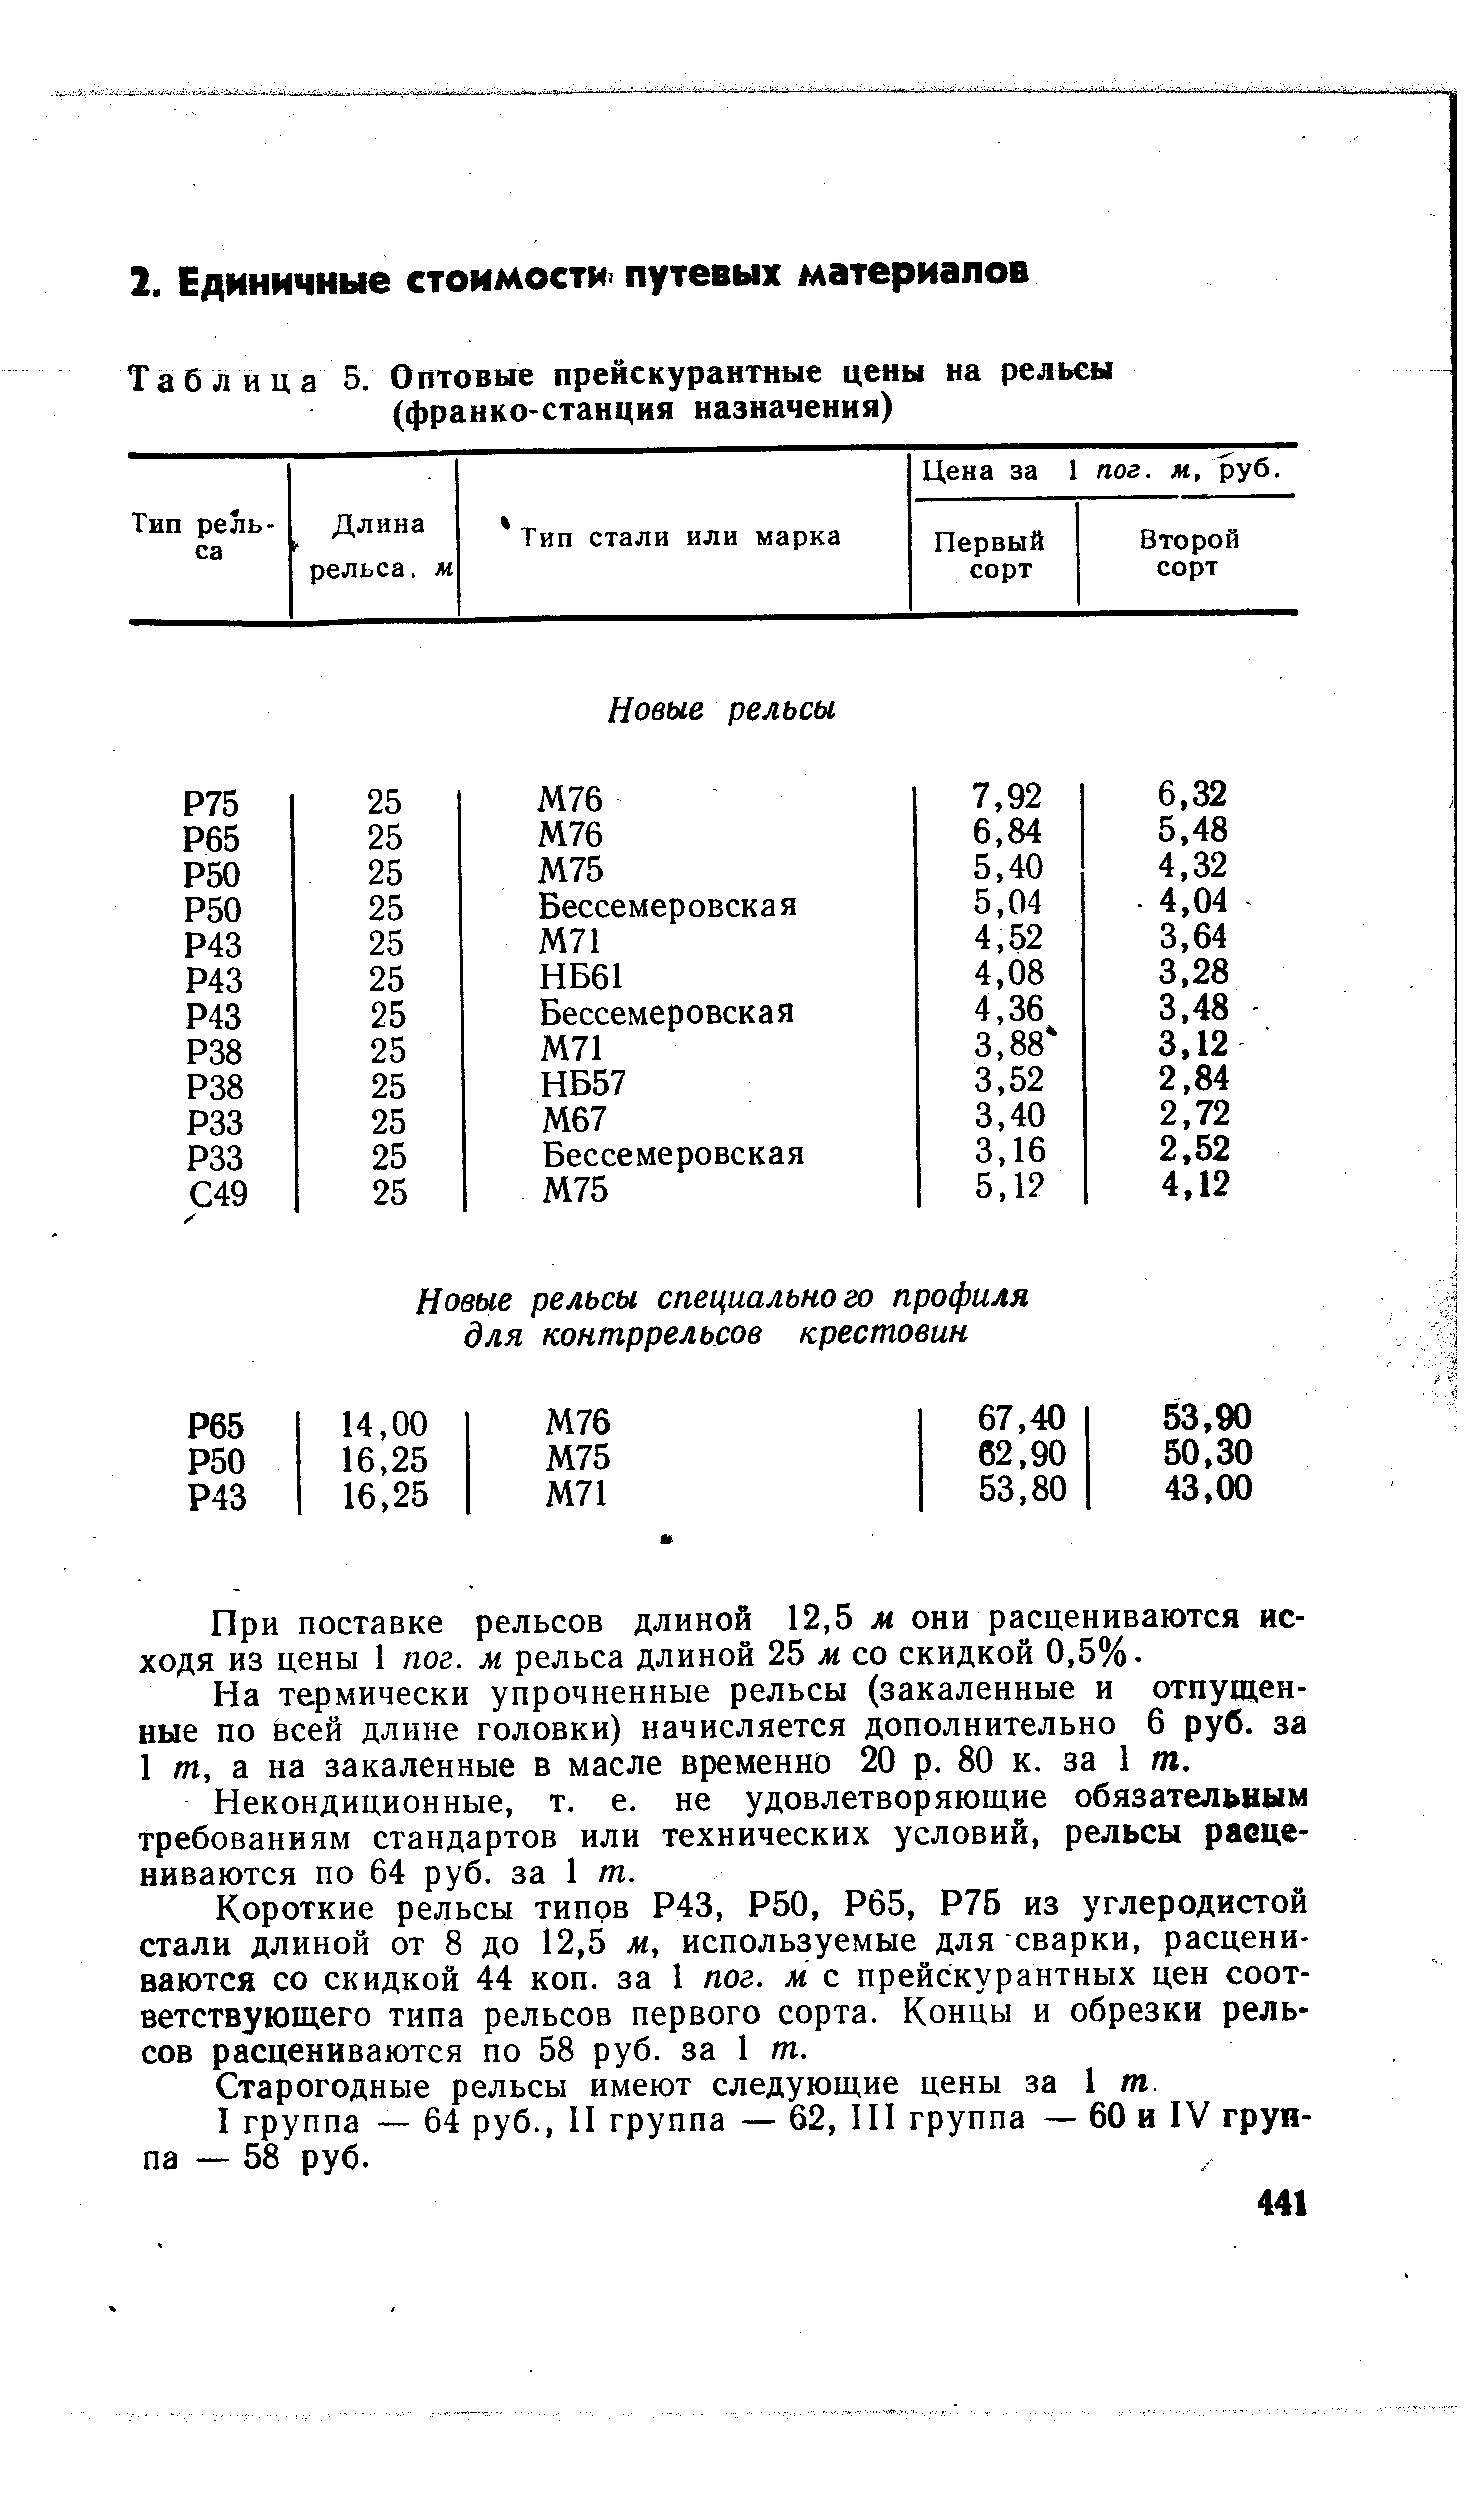 Таблица 5. Оптовые прейскураитиые цены на рельсы (франко-станция назначения)
